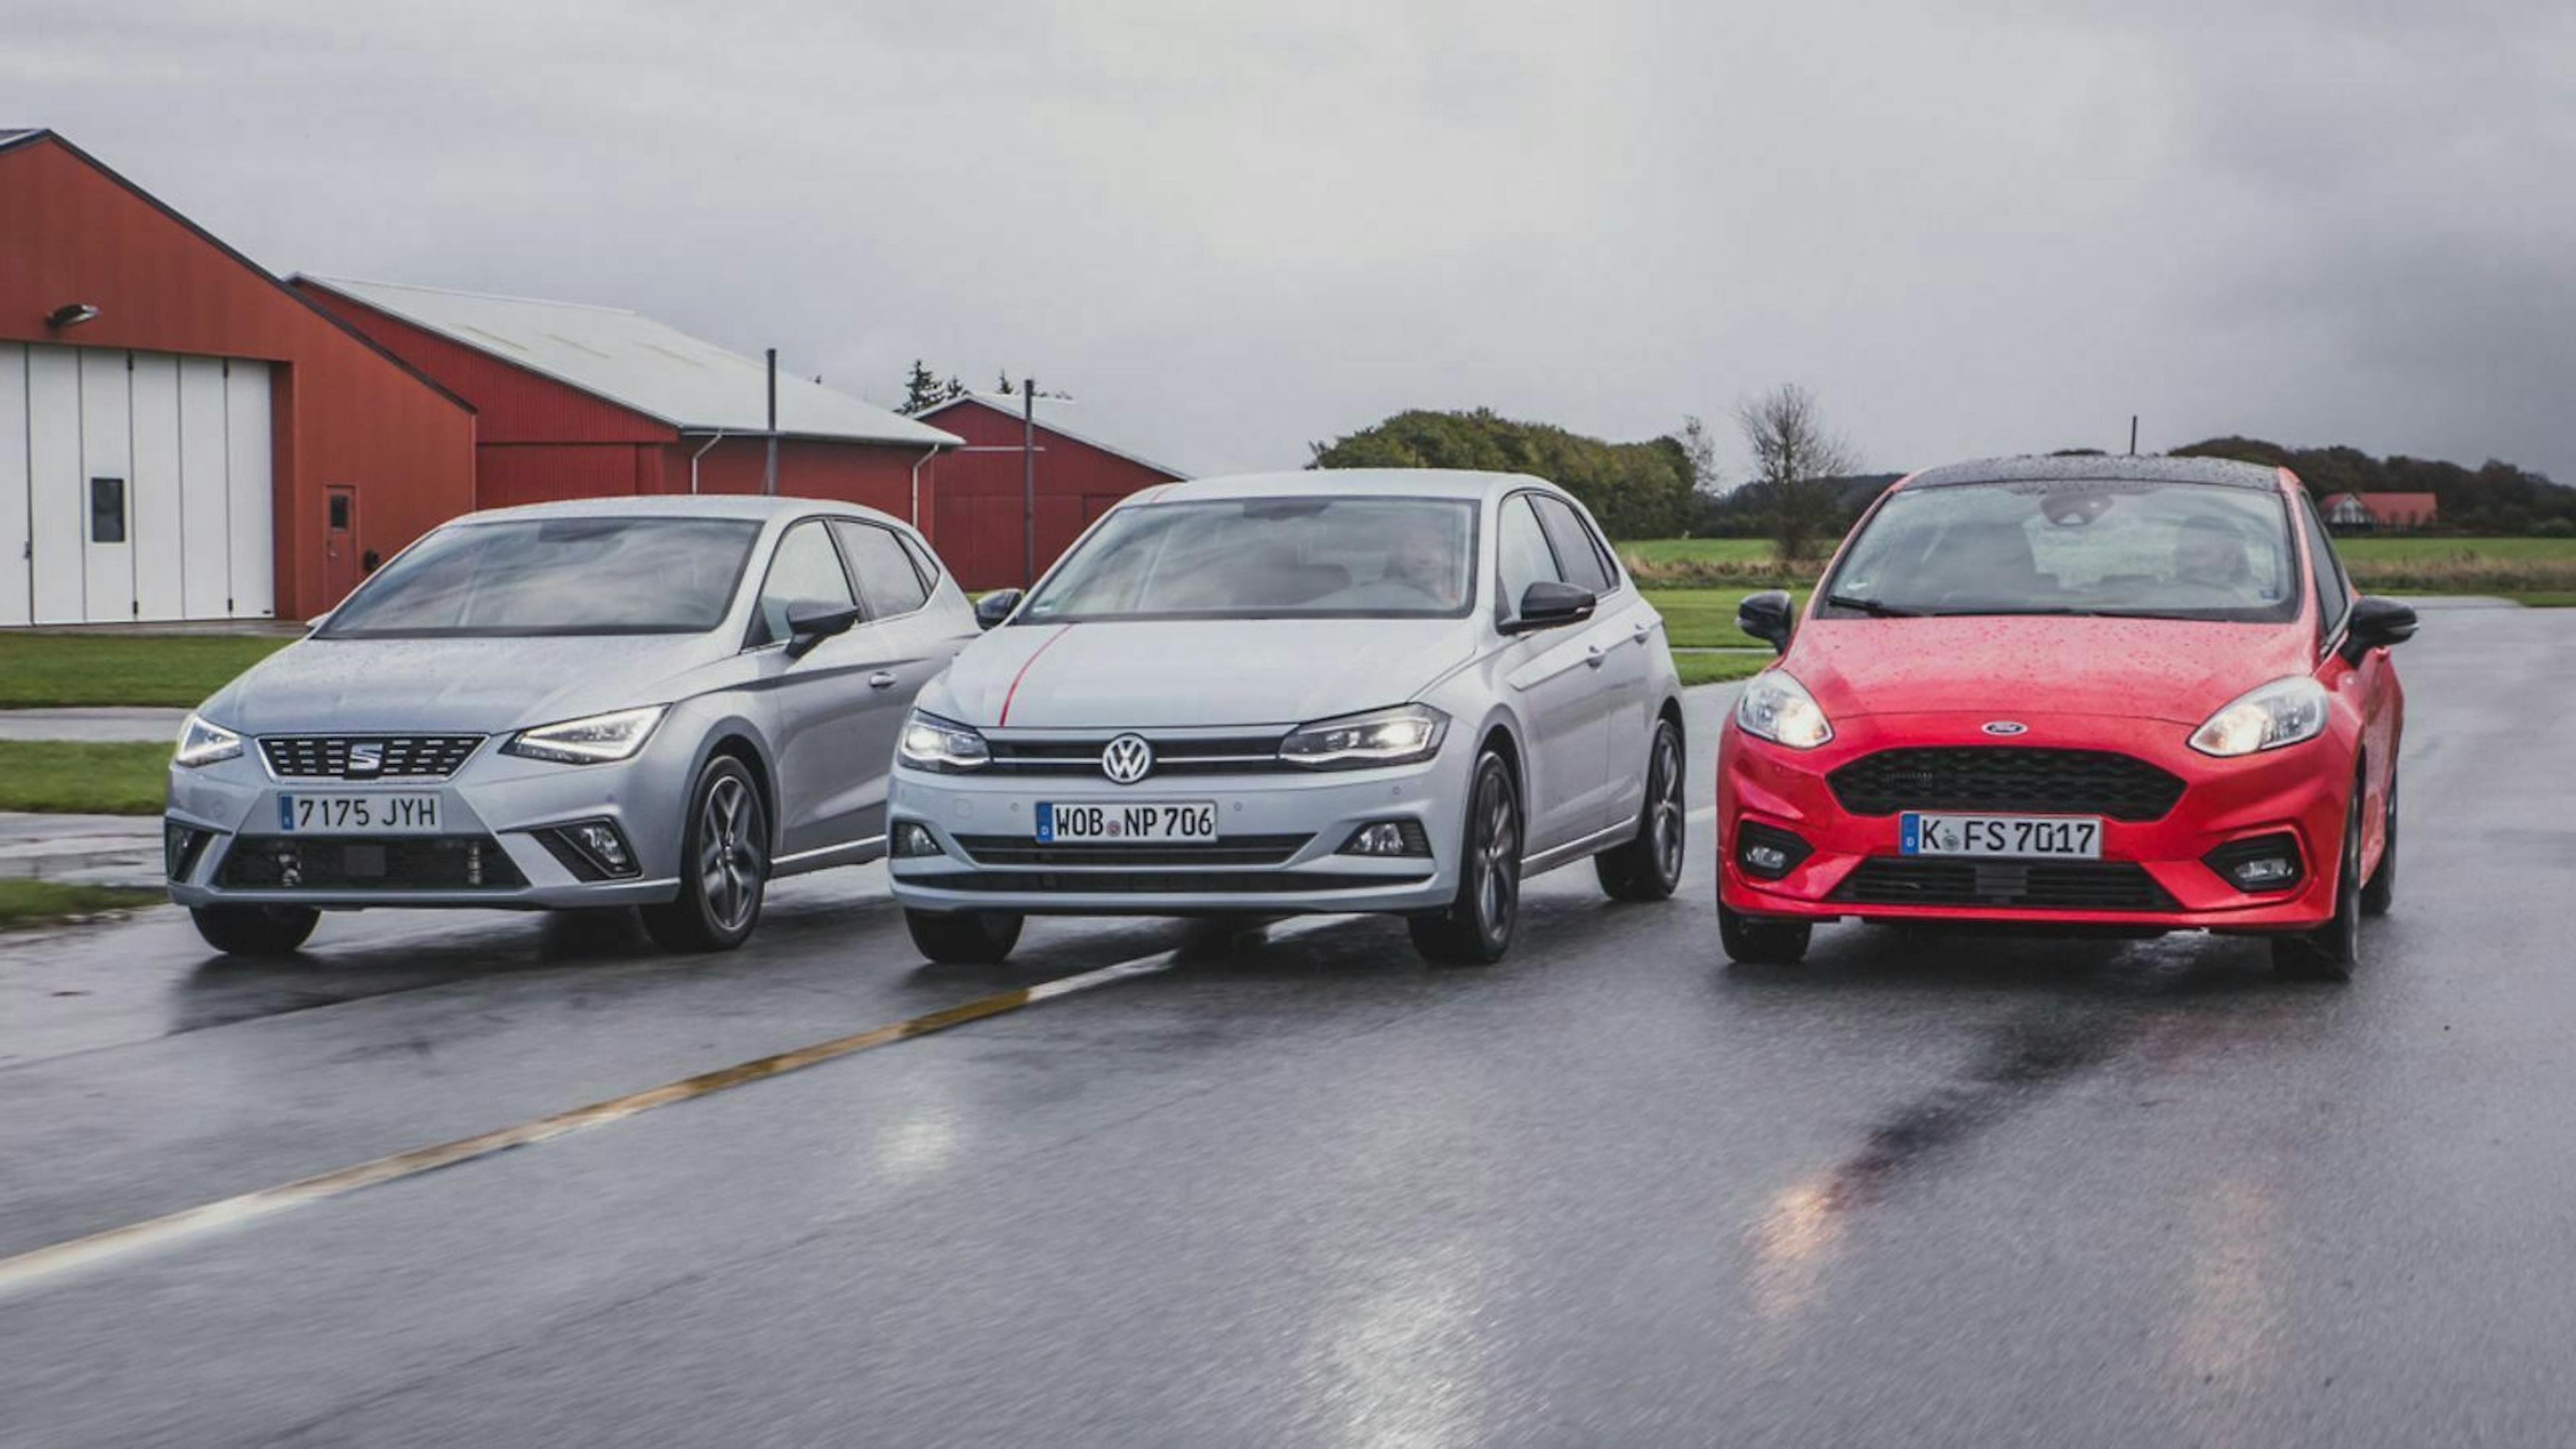 Ford Fiesta, VW Polo und Seat Ibiza fahren nebeneinander auf einer Straße, die Fronten der Autos sind zu sehen. 